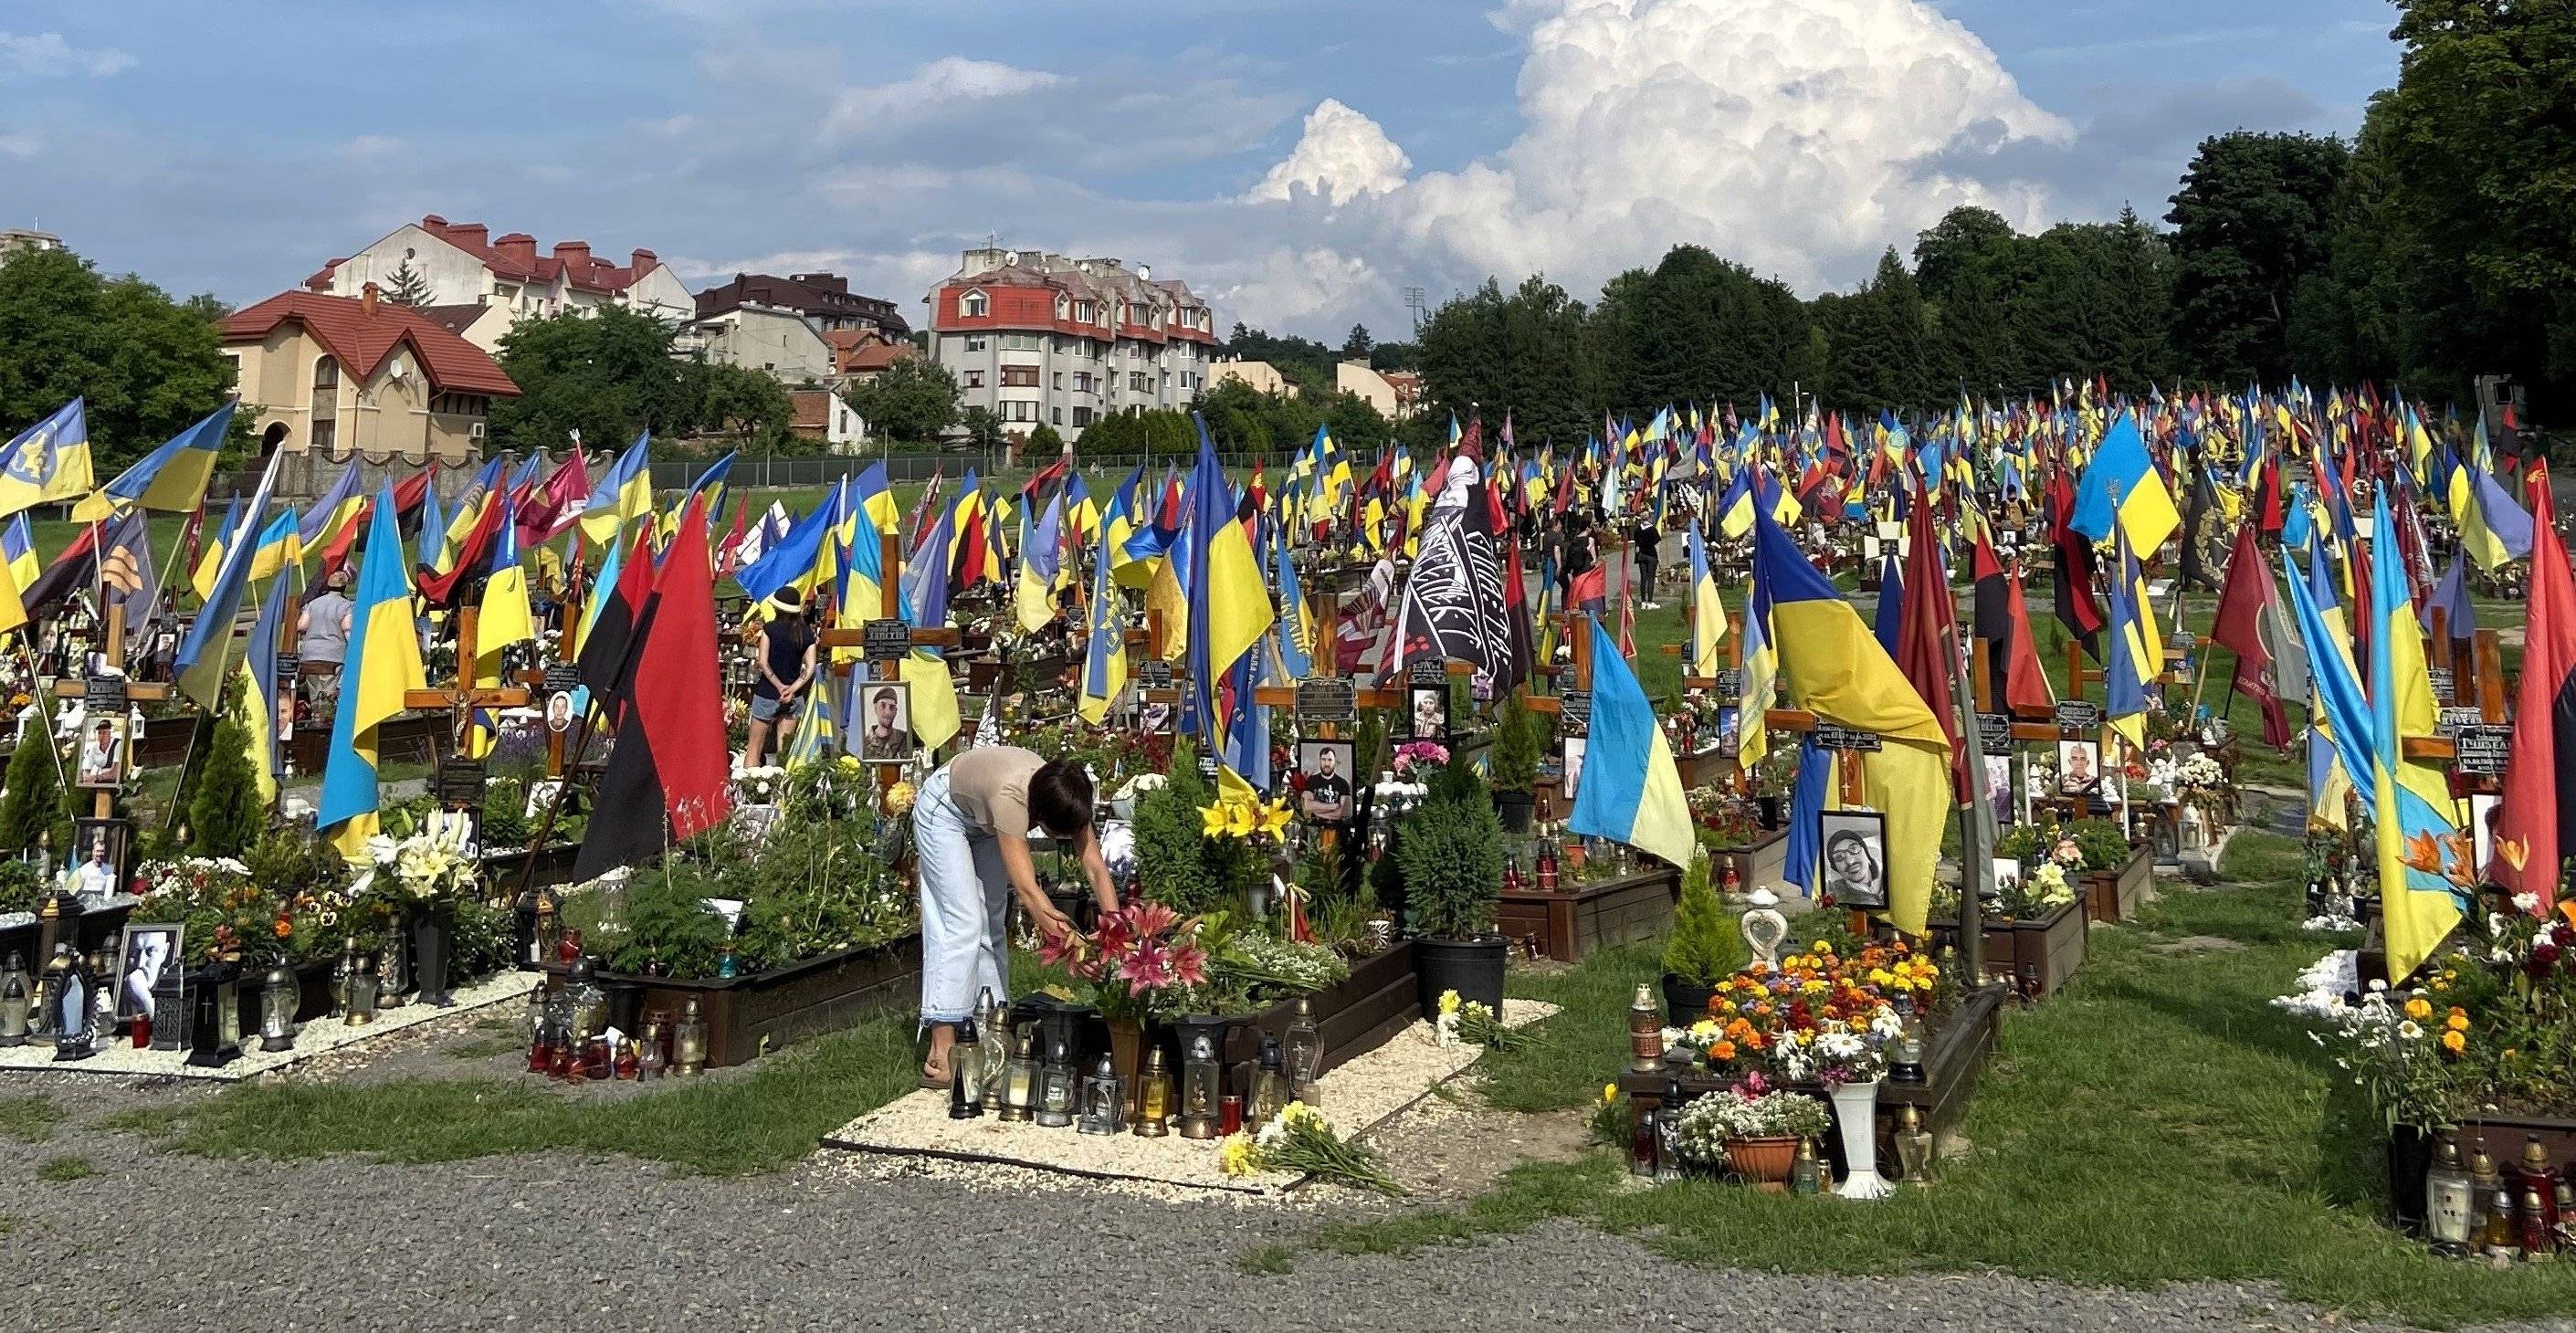 cmentarz poległych żołnierzy ukraińskich, widać ich zdjęcia na nagrobkach, w środku młoda kobieta pochyla sie nad grobem i porządkuje go, wszędzie flagi niebiesko-żółte i czerwono czarne.